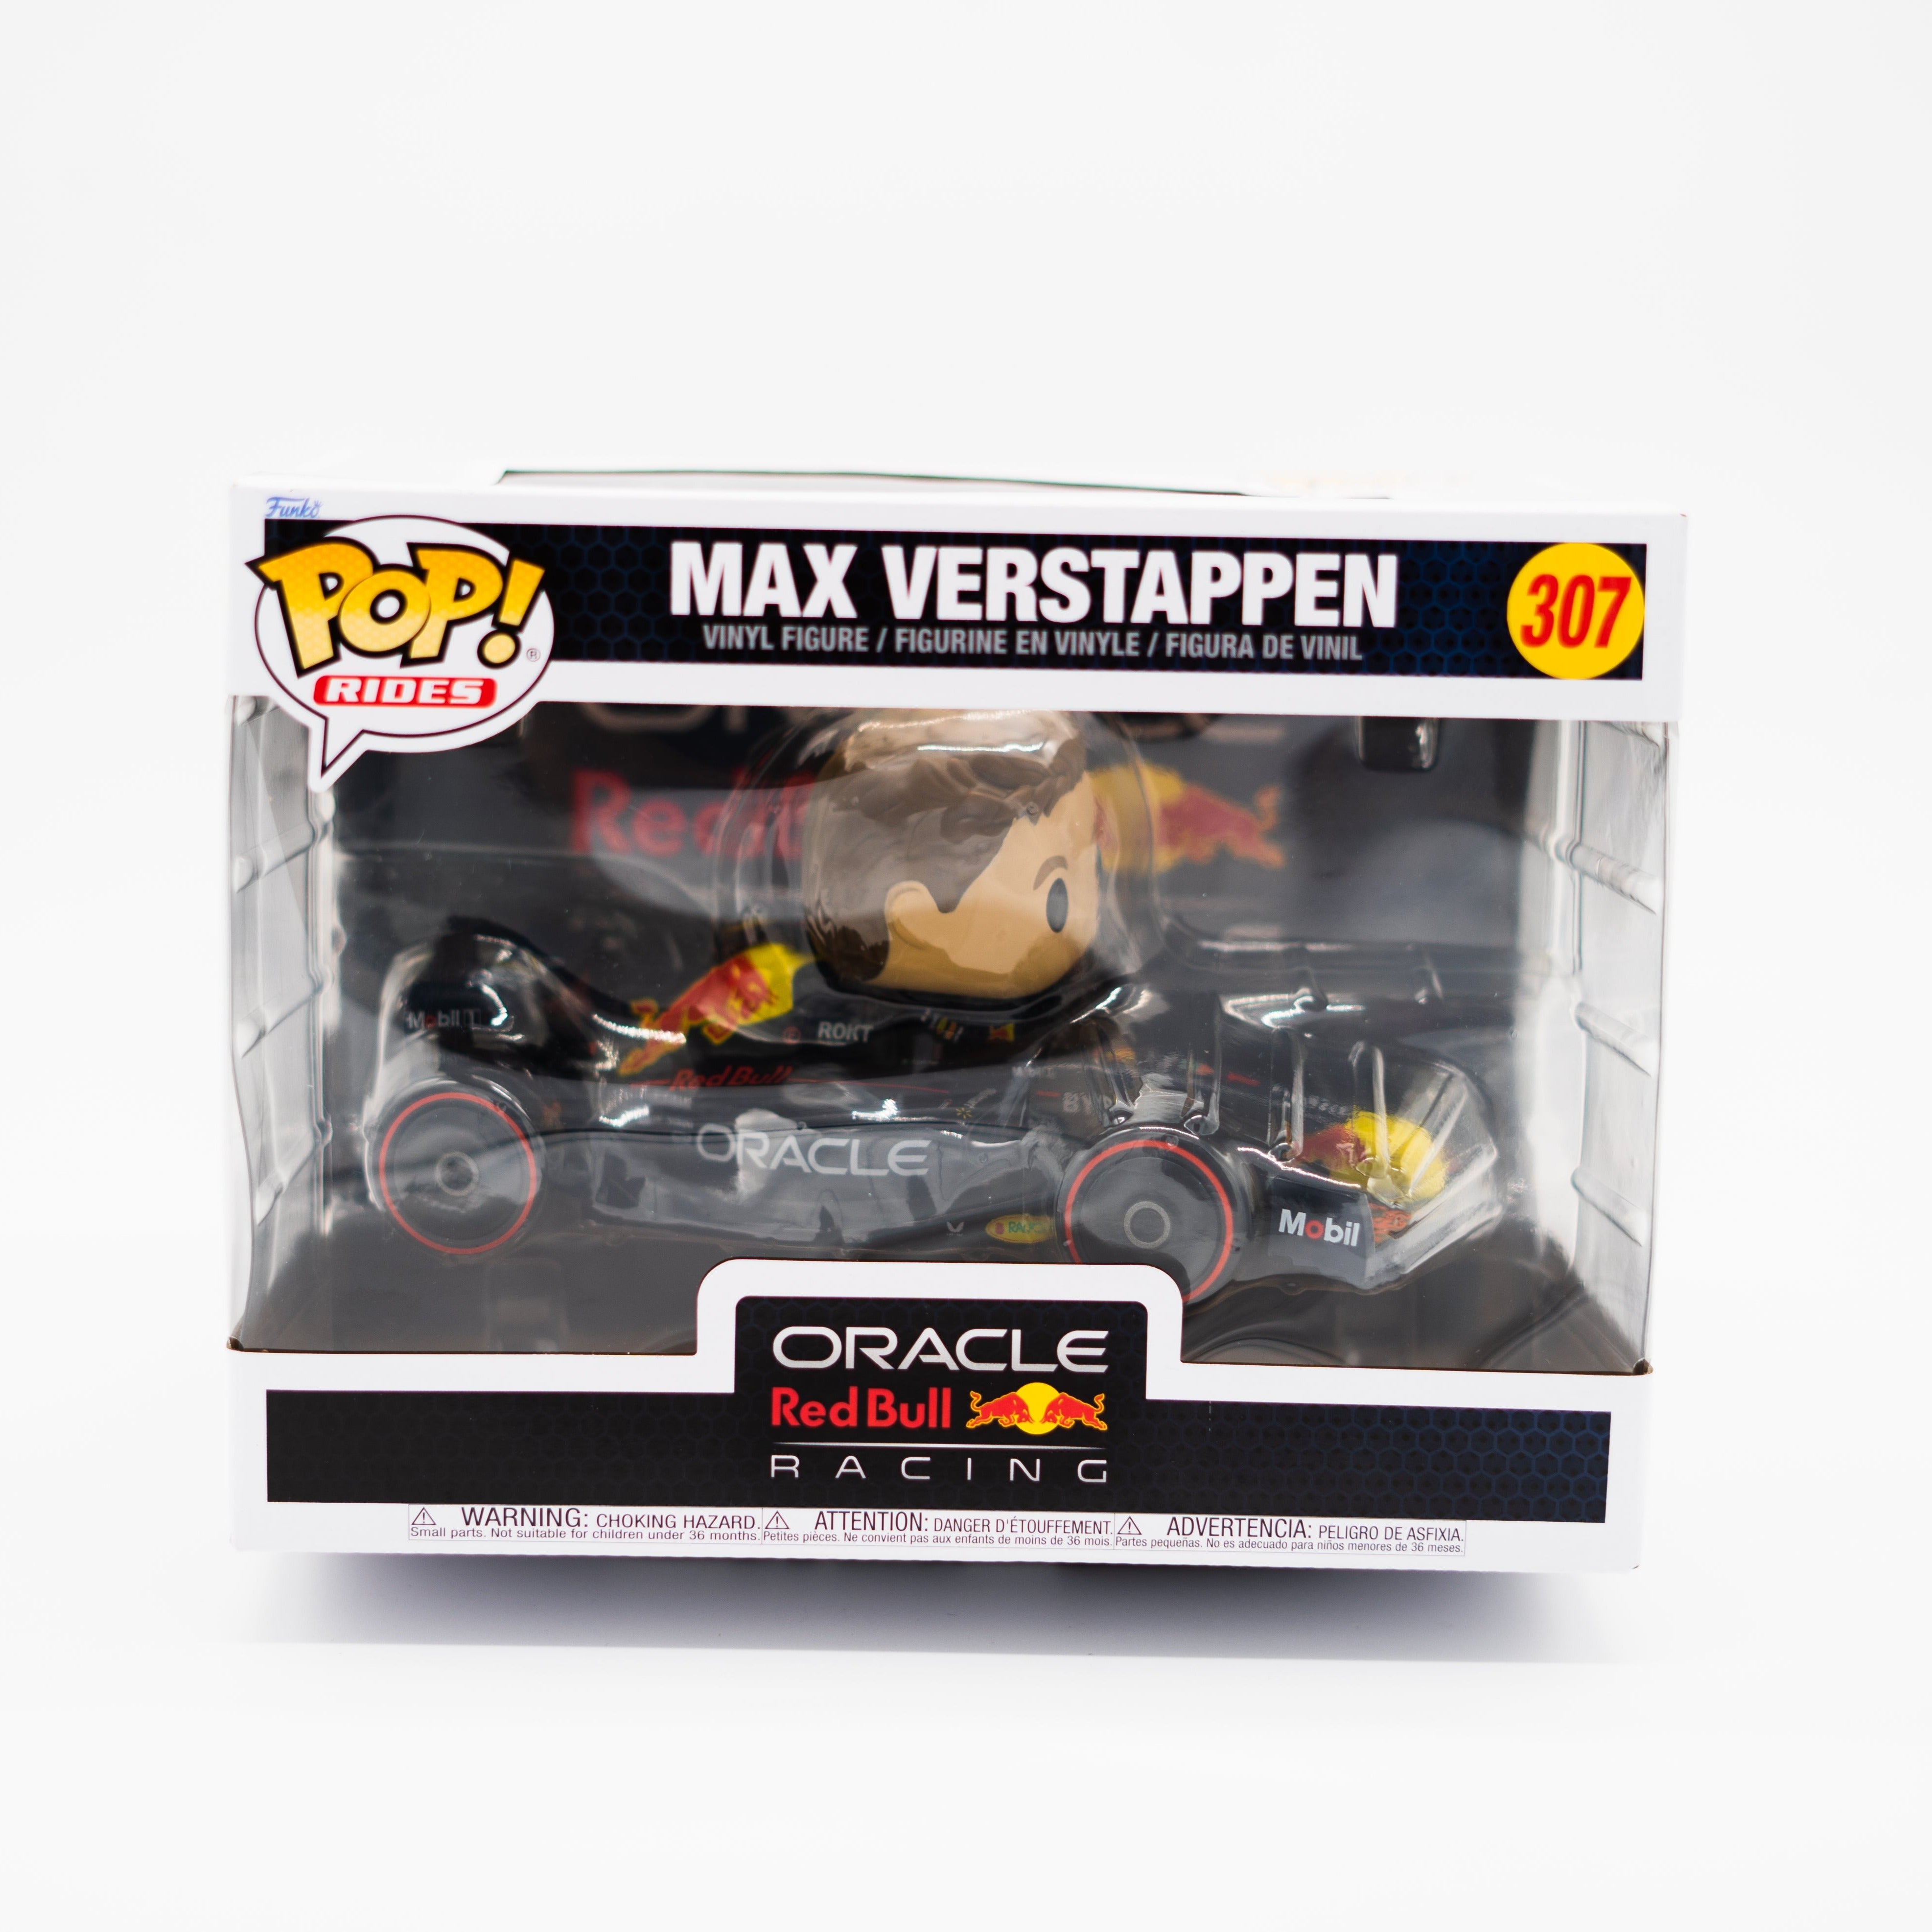 Funko Pop! Max Verstappen 307